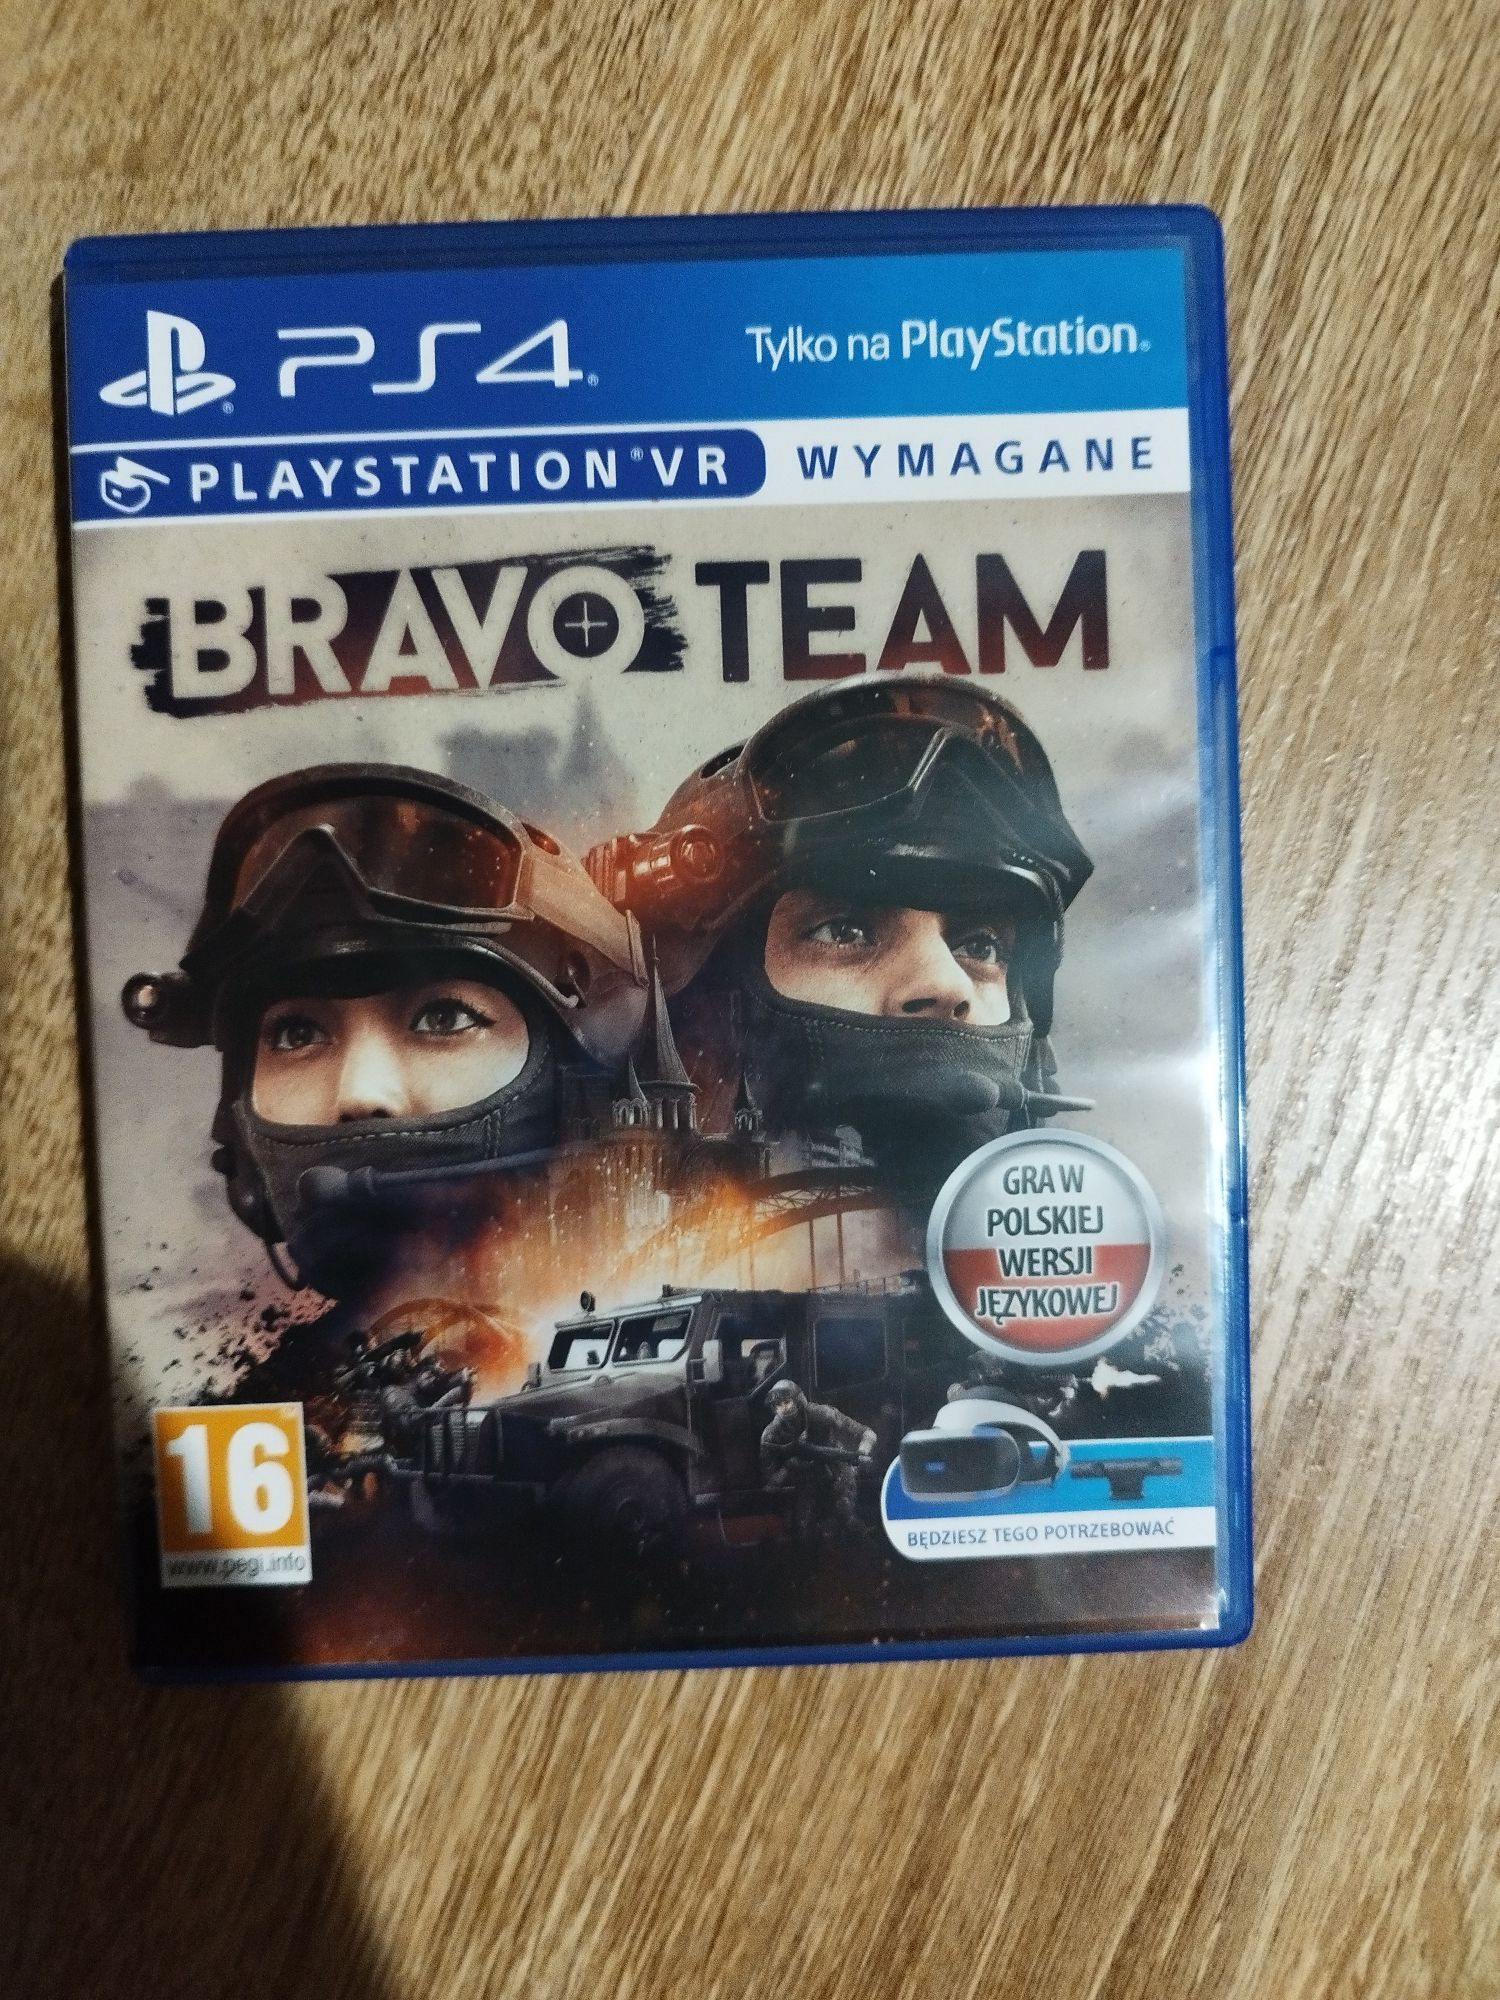 Sprzedam grę Bravo team PS4